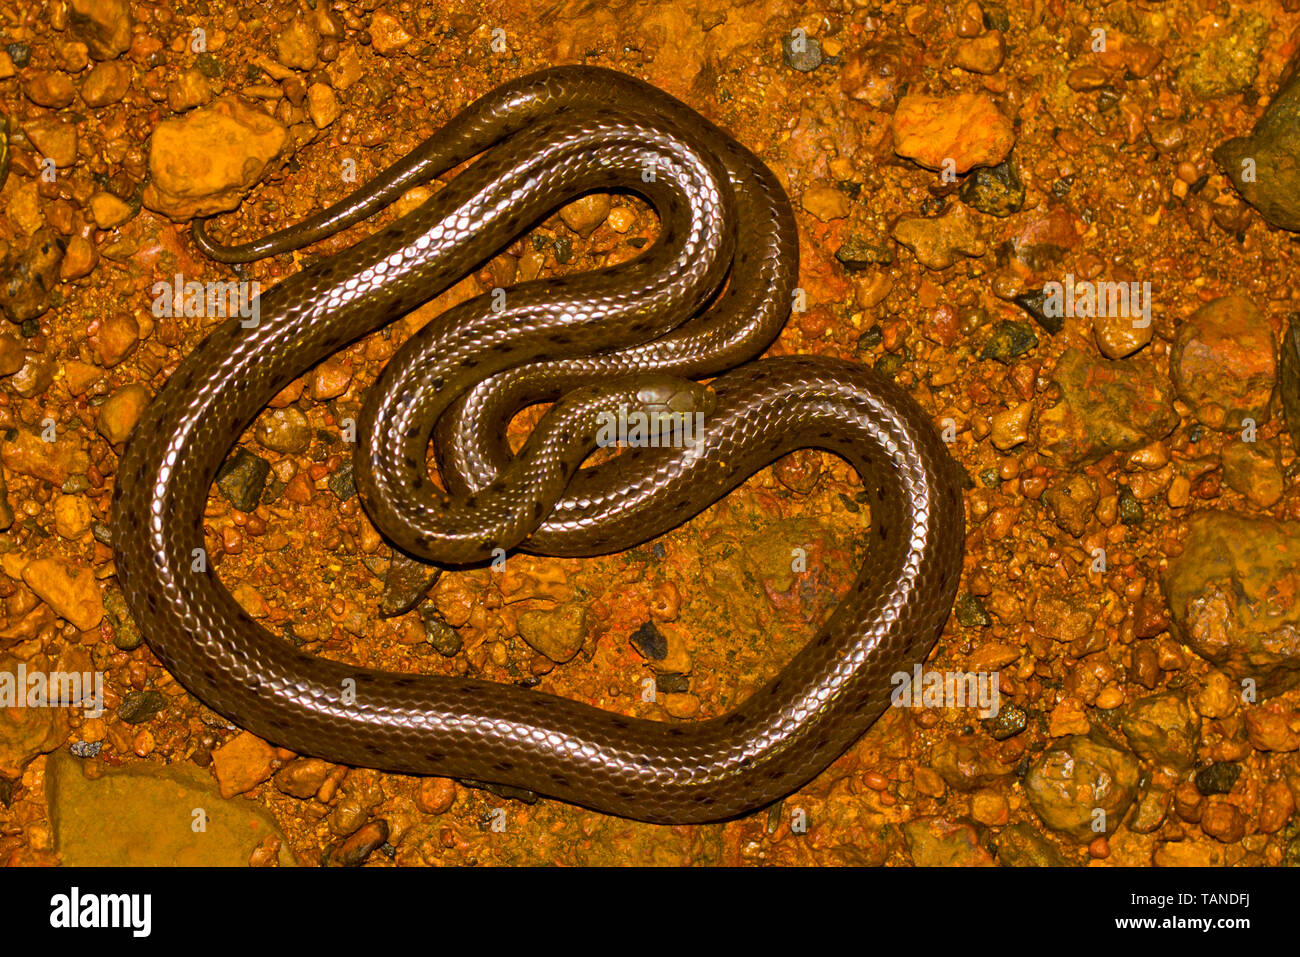 Rhabdops aquaticus a non-venomous aquatic snake, Amboli, Maharashtra, India. Stock Photo